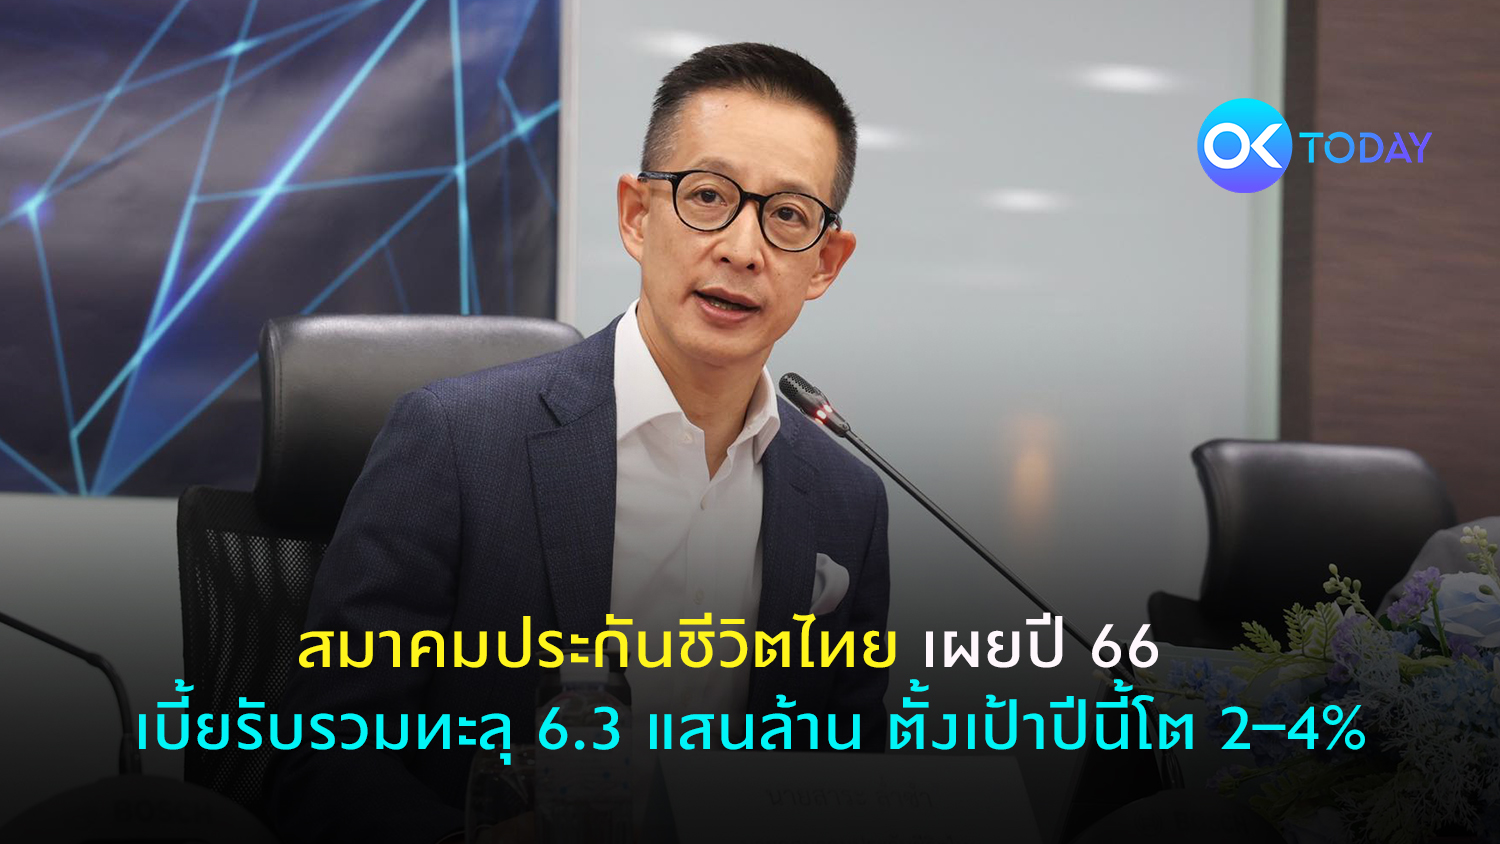 สมาคมประกันชีวิตไทย เผยปี 66 เบี้ยรับรวมทะลุ 6.3 แสนล้าน ตั้งเป้าปีนี้โต 2–4%